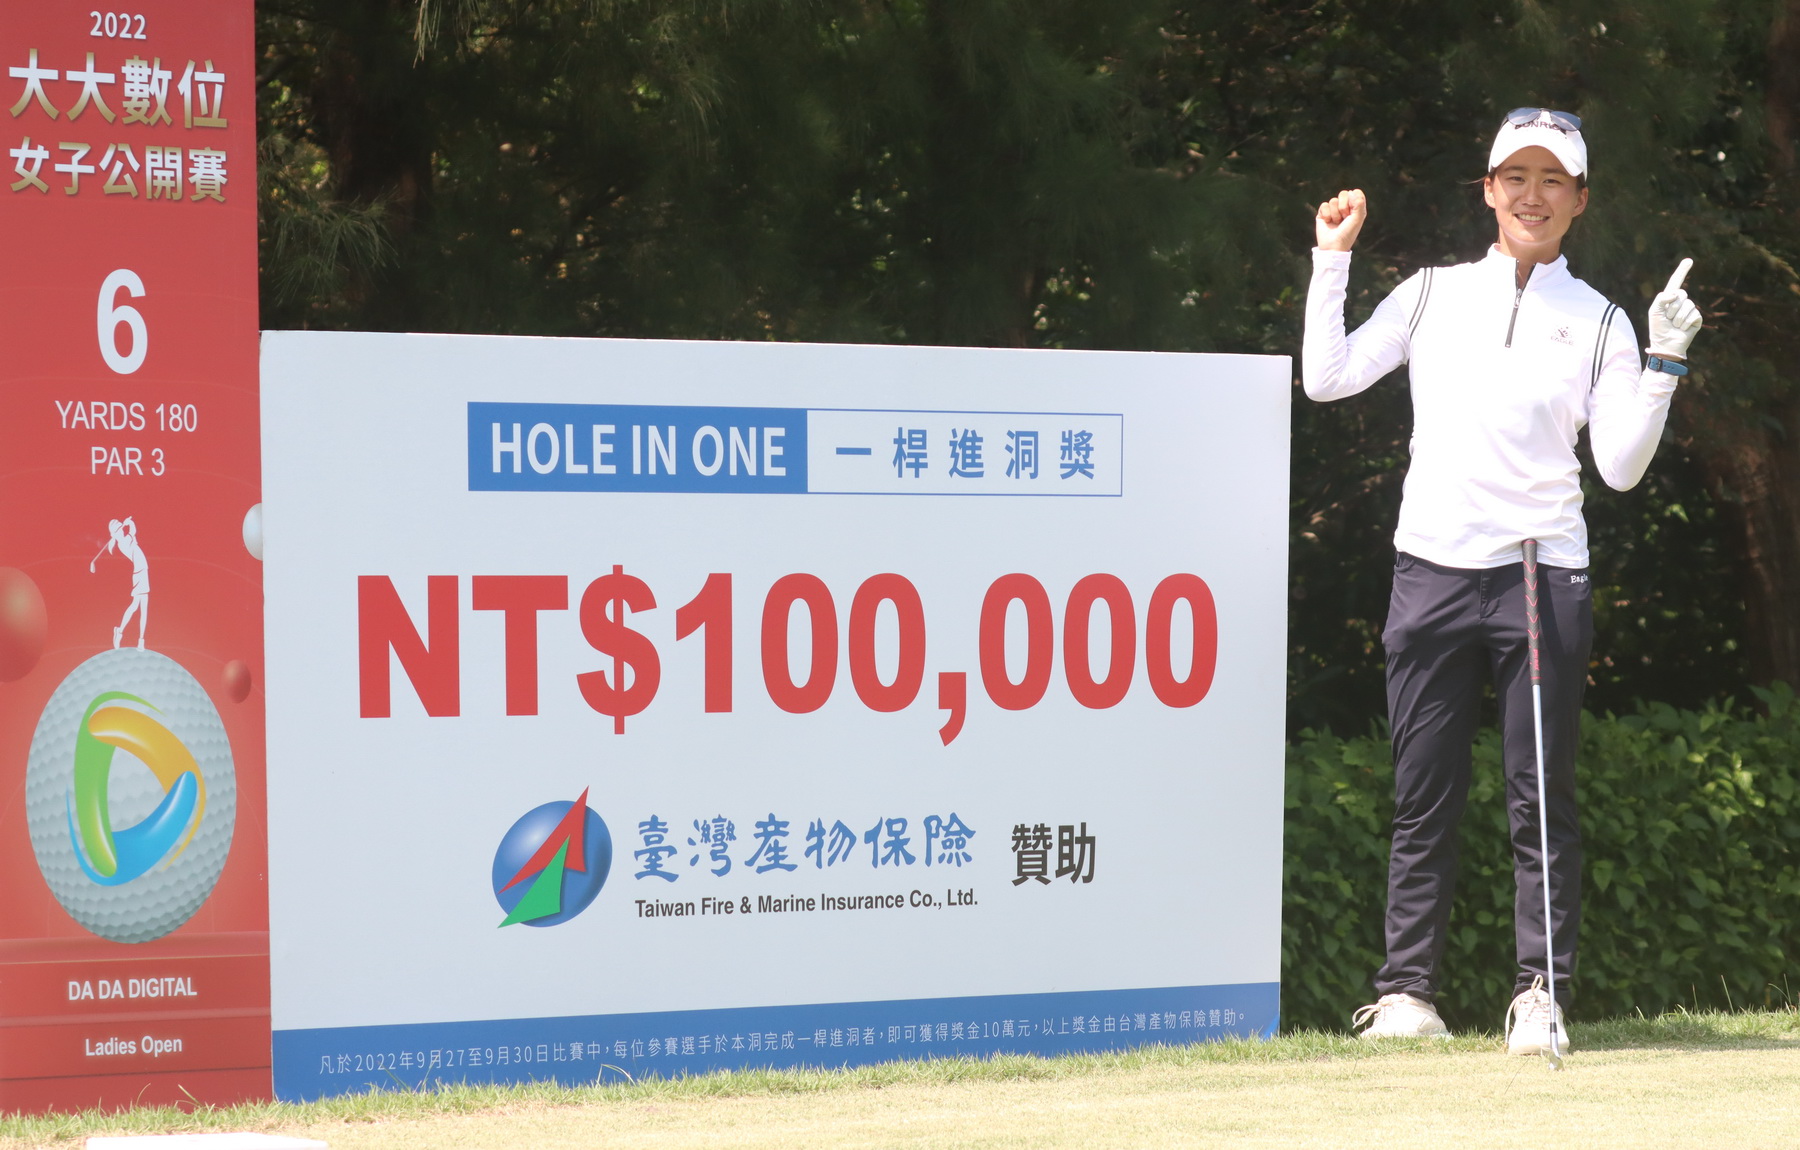 第二回合蔡欣恩在第六洞擊出一桿進洞台灣產物保險贊助十萬元。鍾豐榮攝影